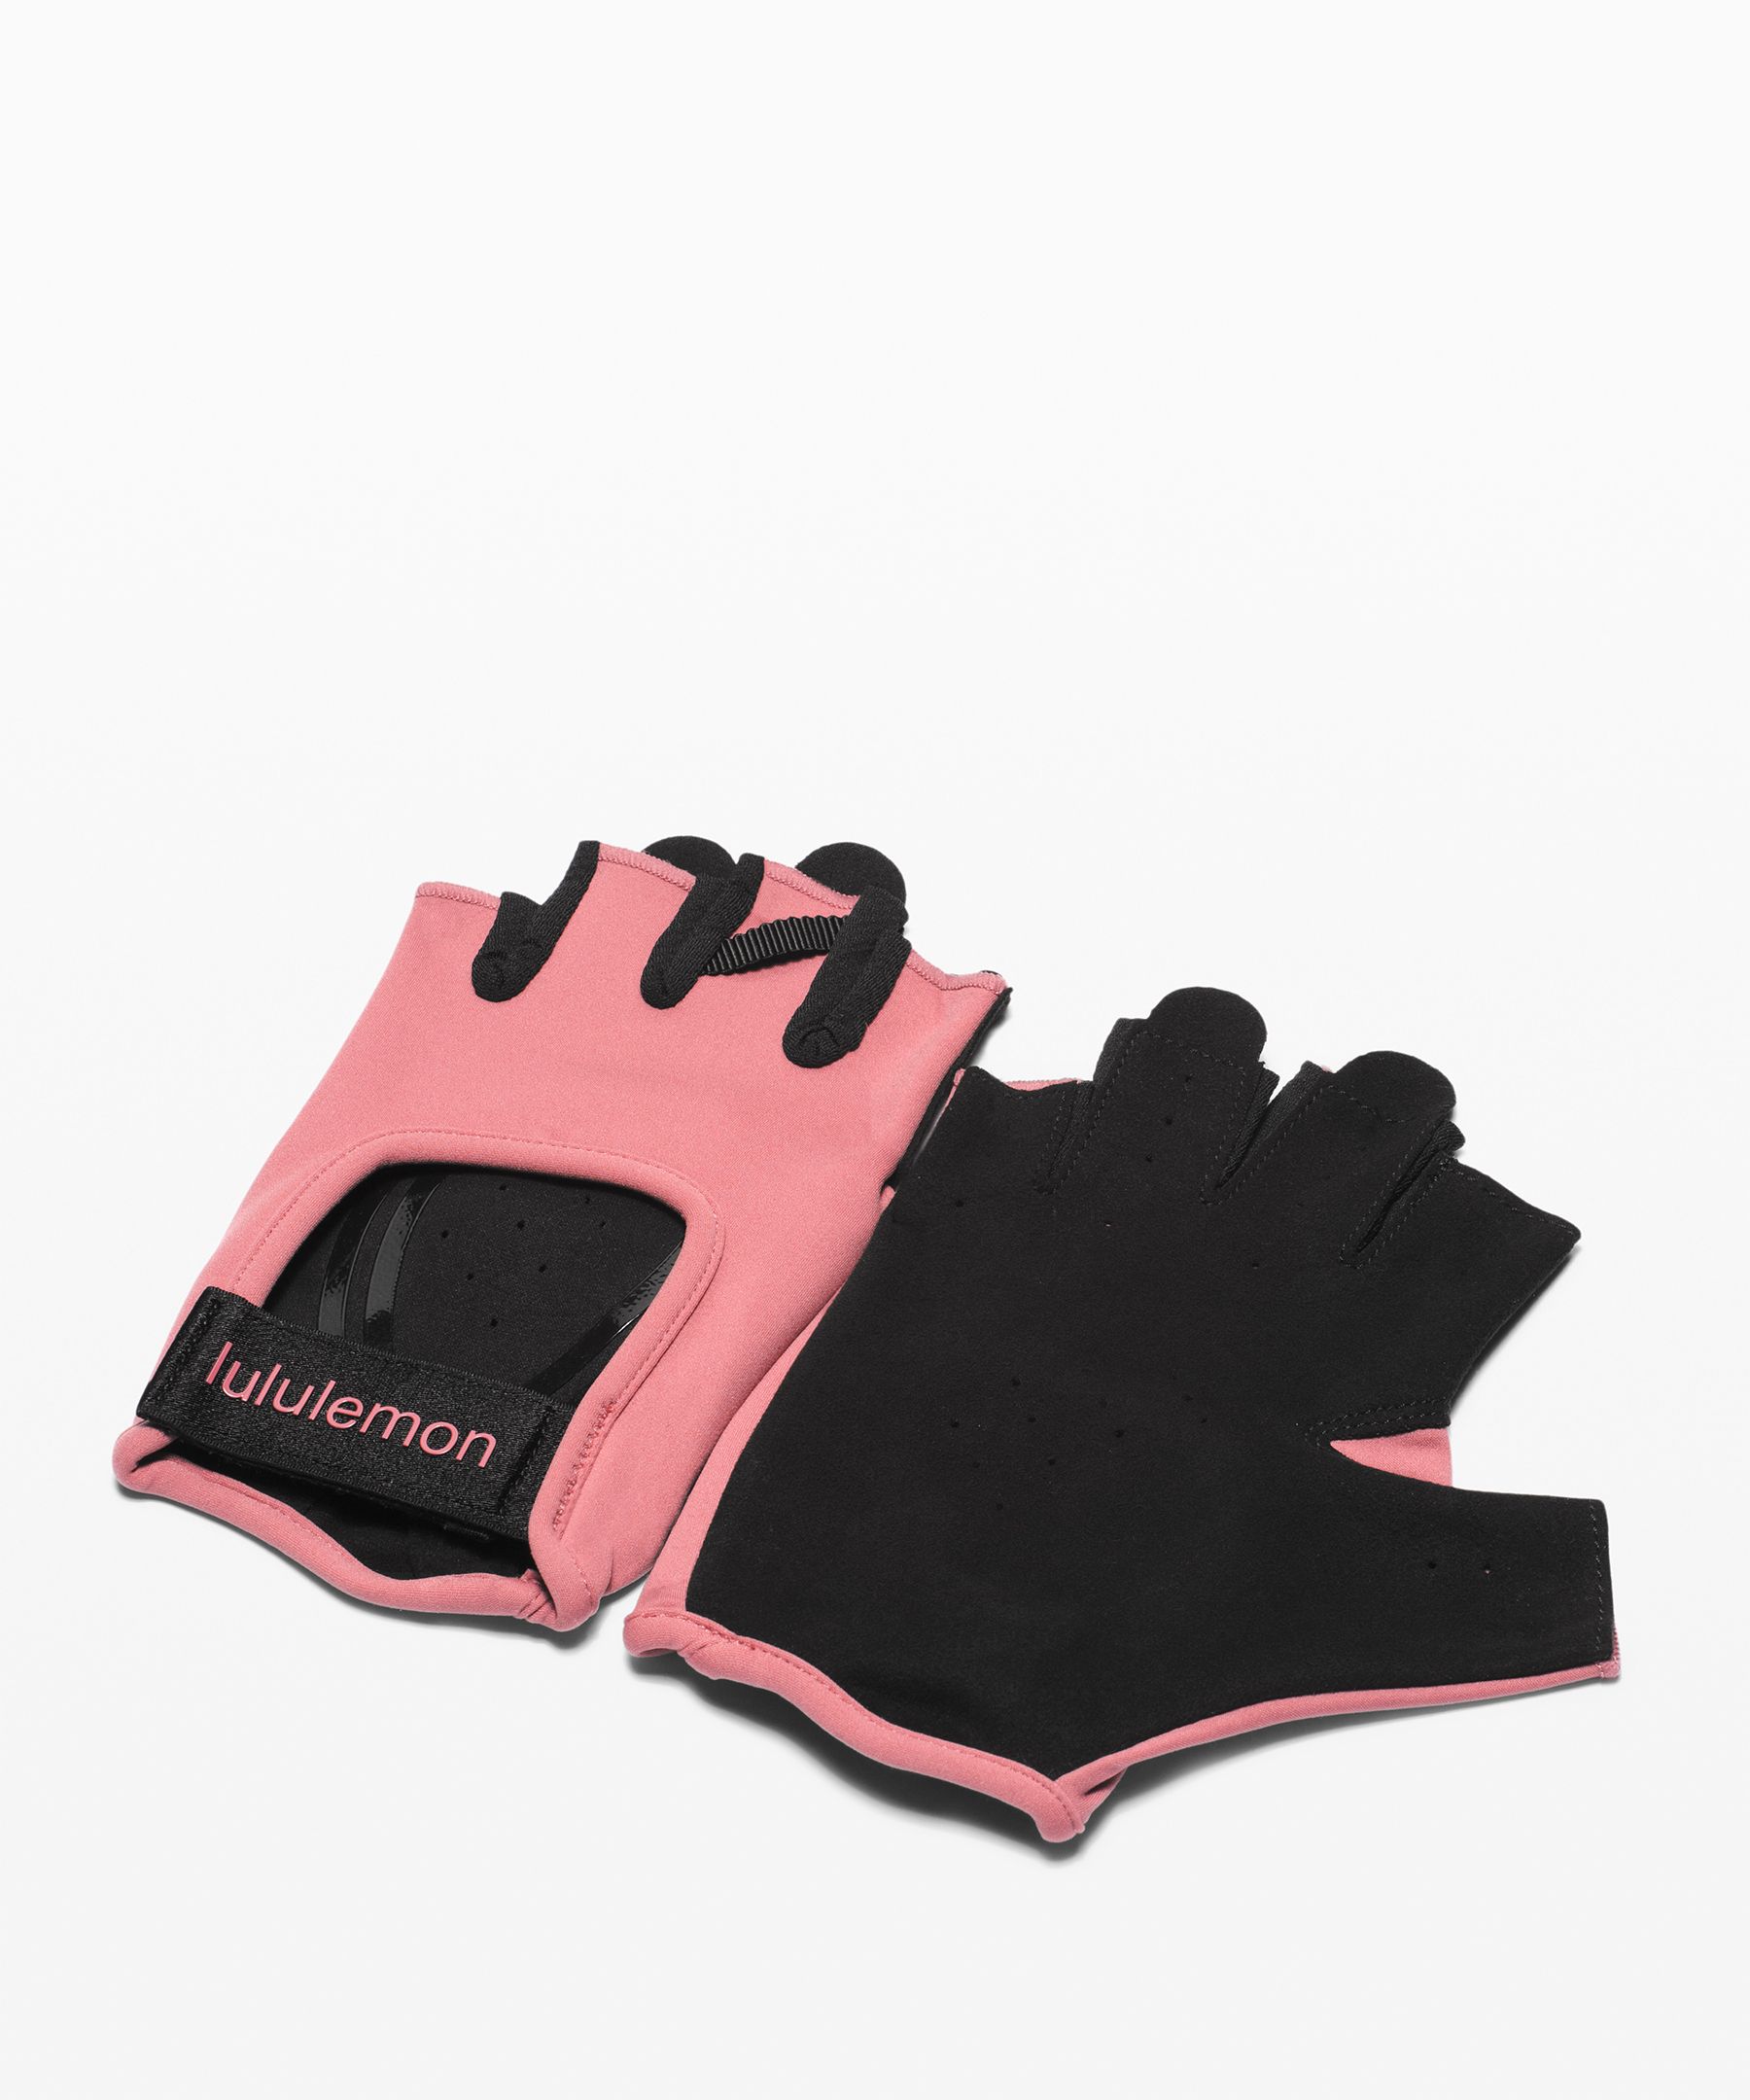 lululemon womens gloves